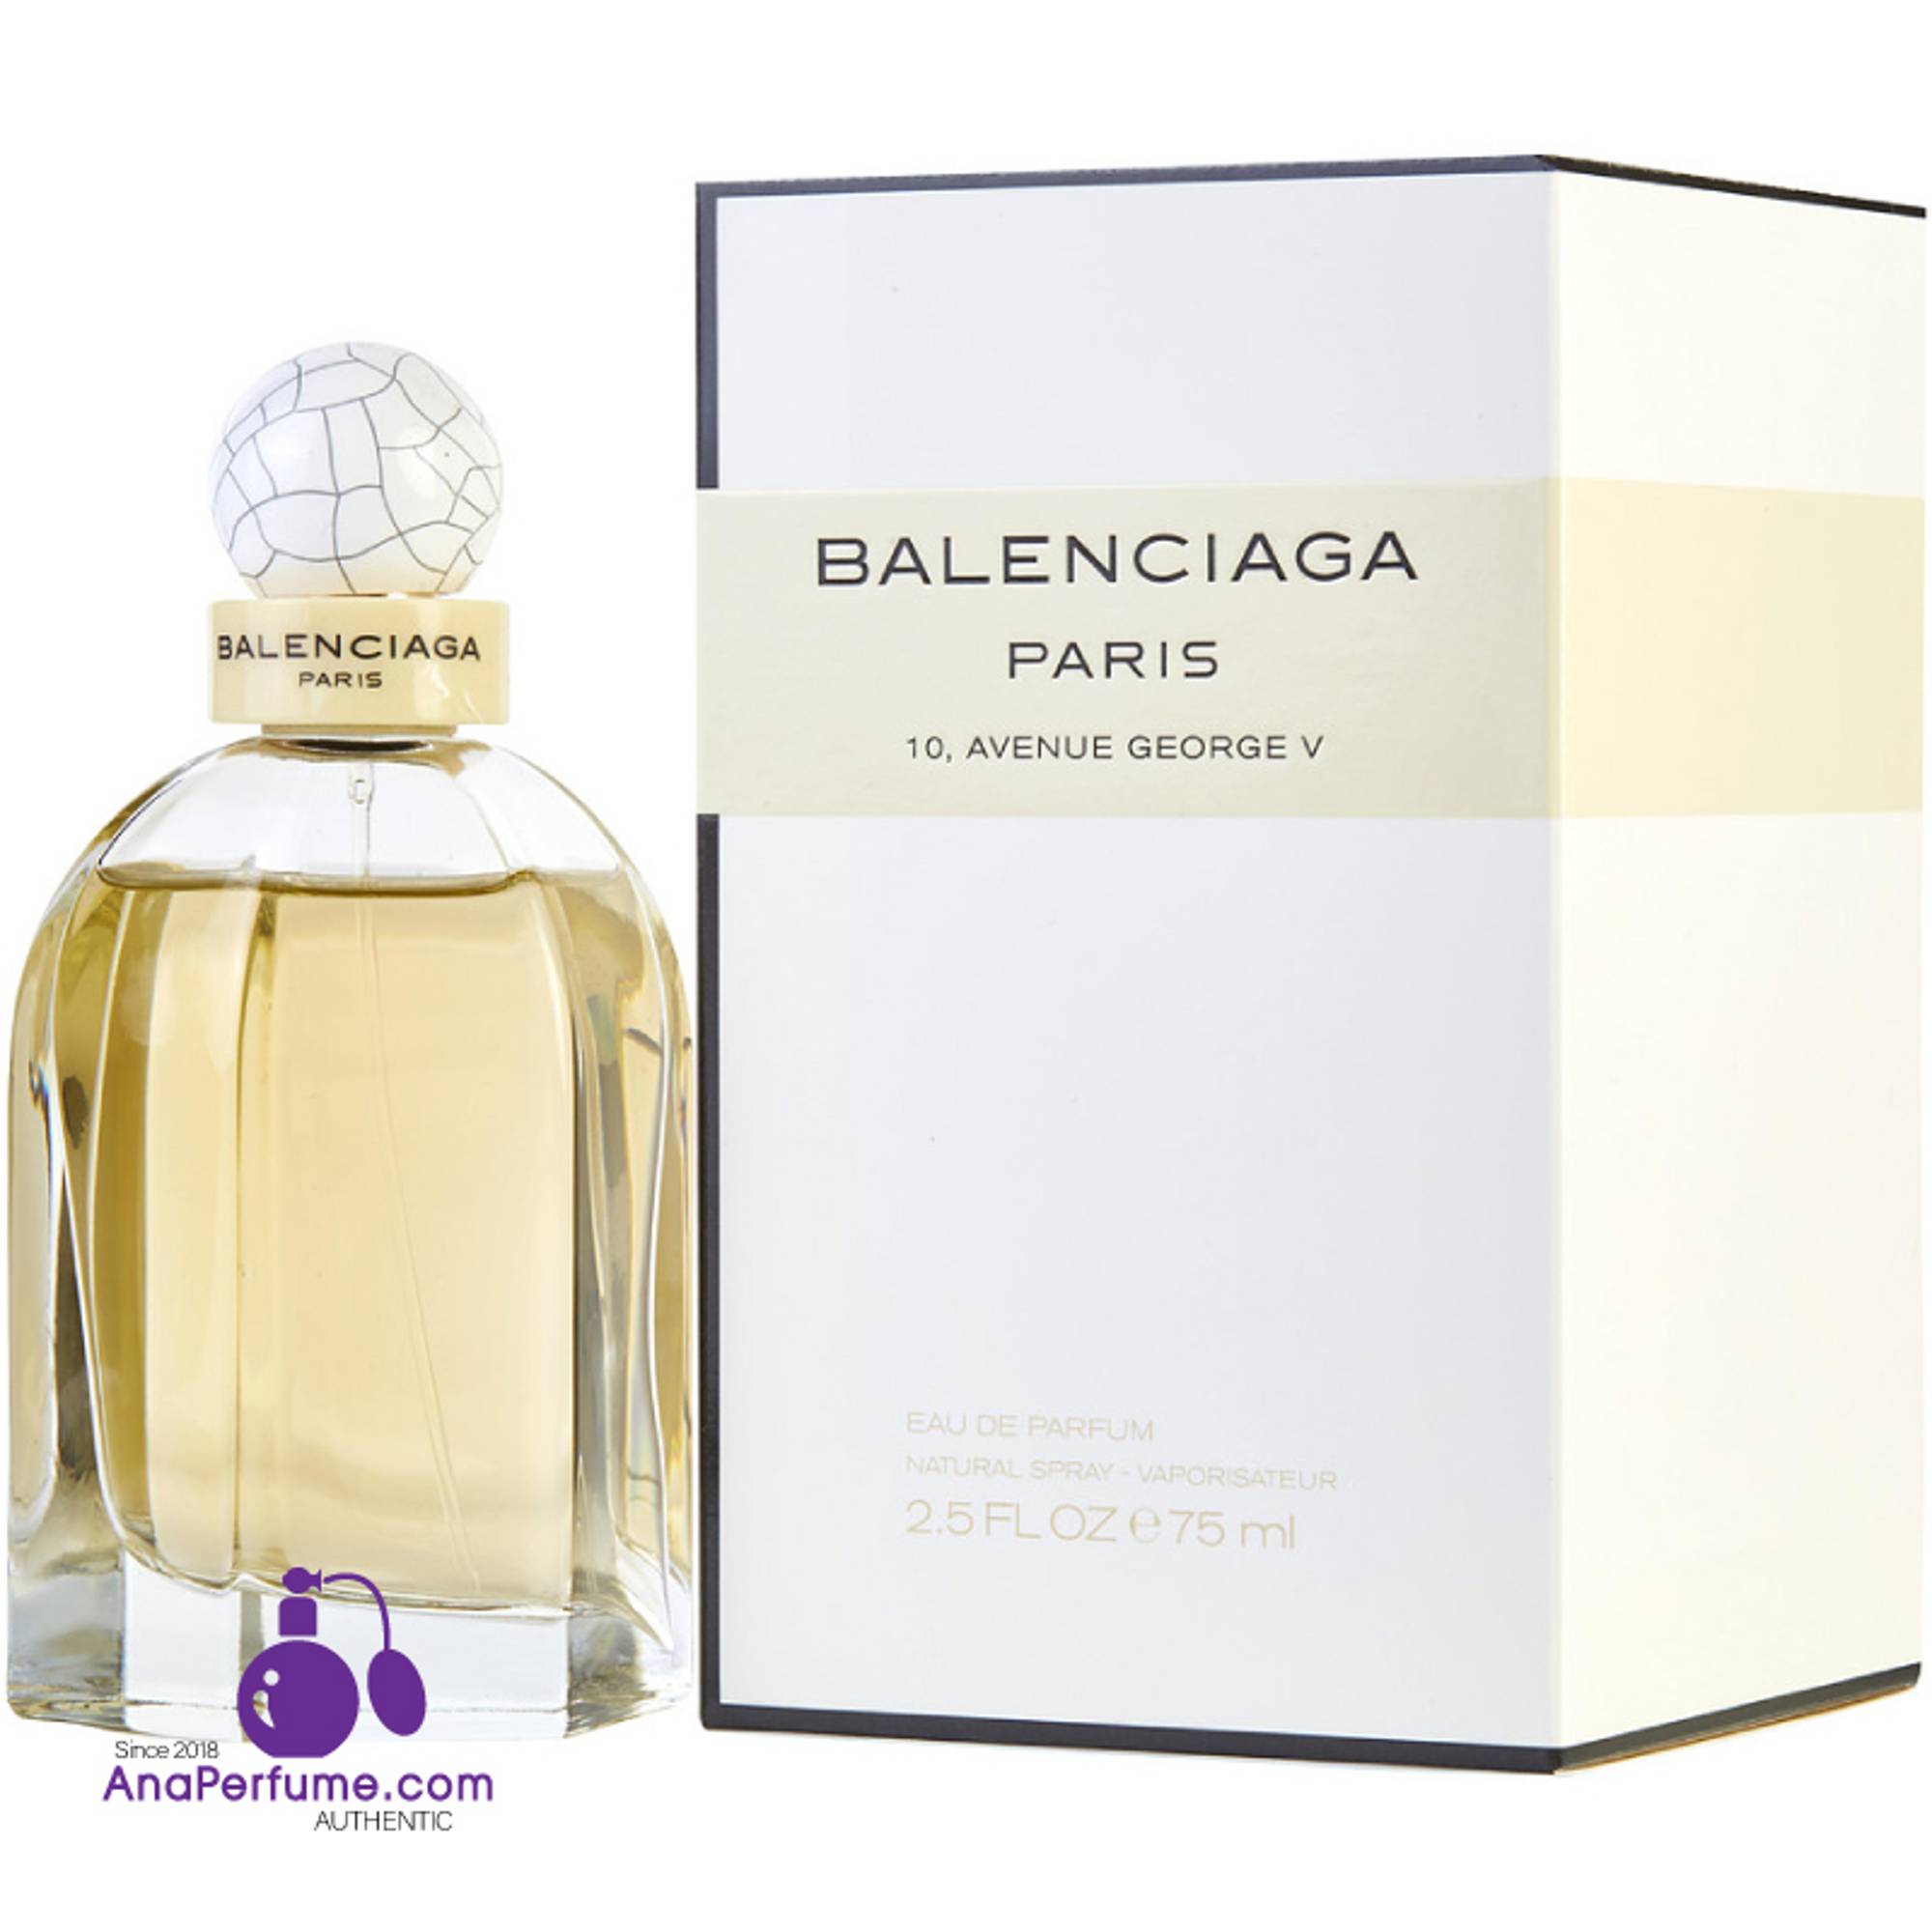 Nước hoa nữ Balenciaga Paris EDP Balenciaga chính hãng nhập khẩu